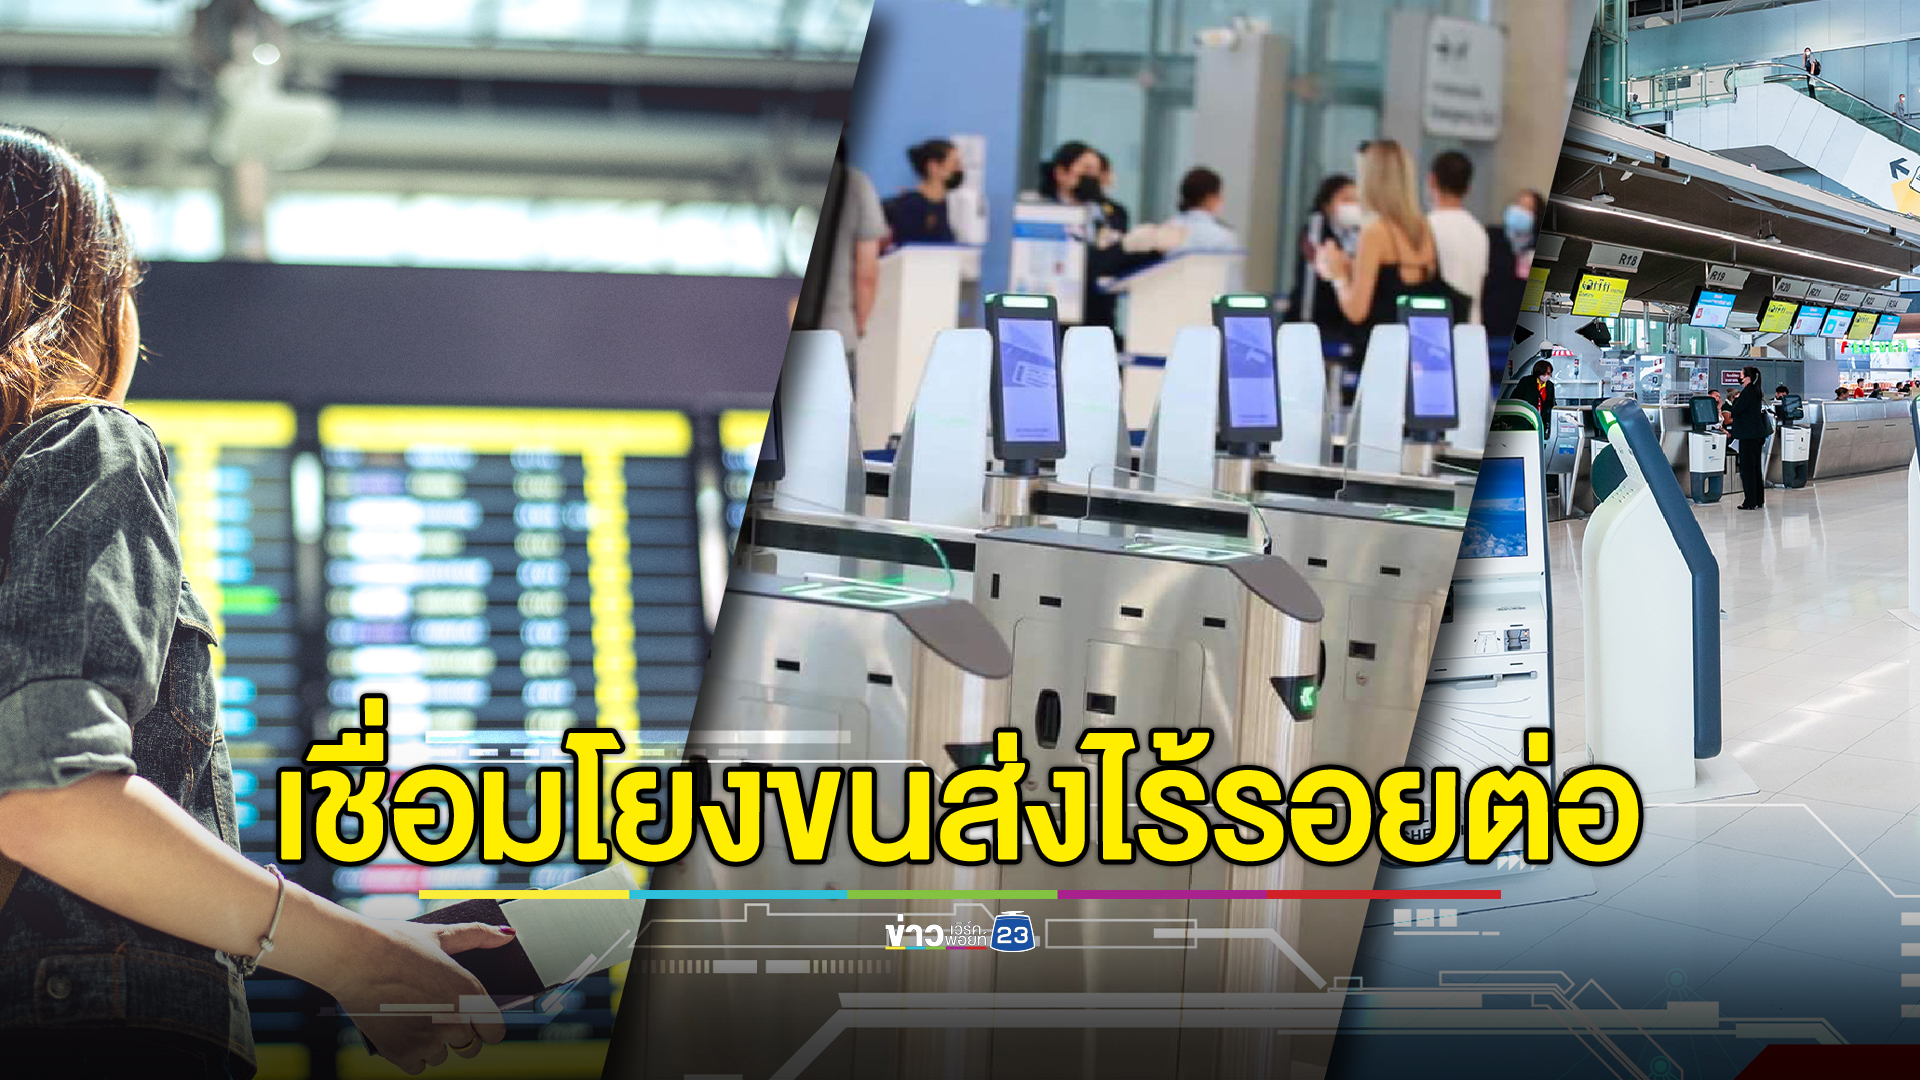 “คมนาคม” ขับเคลื่อนประเทศไทยสู่ “ฮับการบินในภูมิภาค”